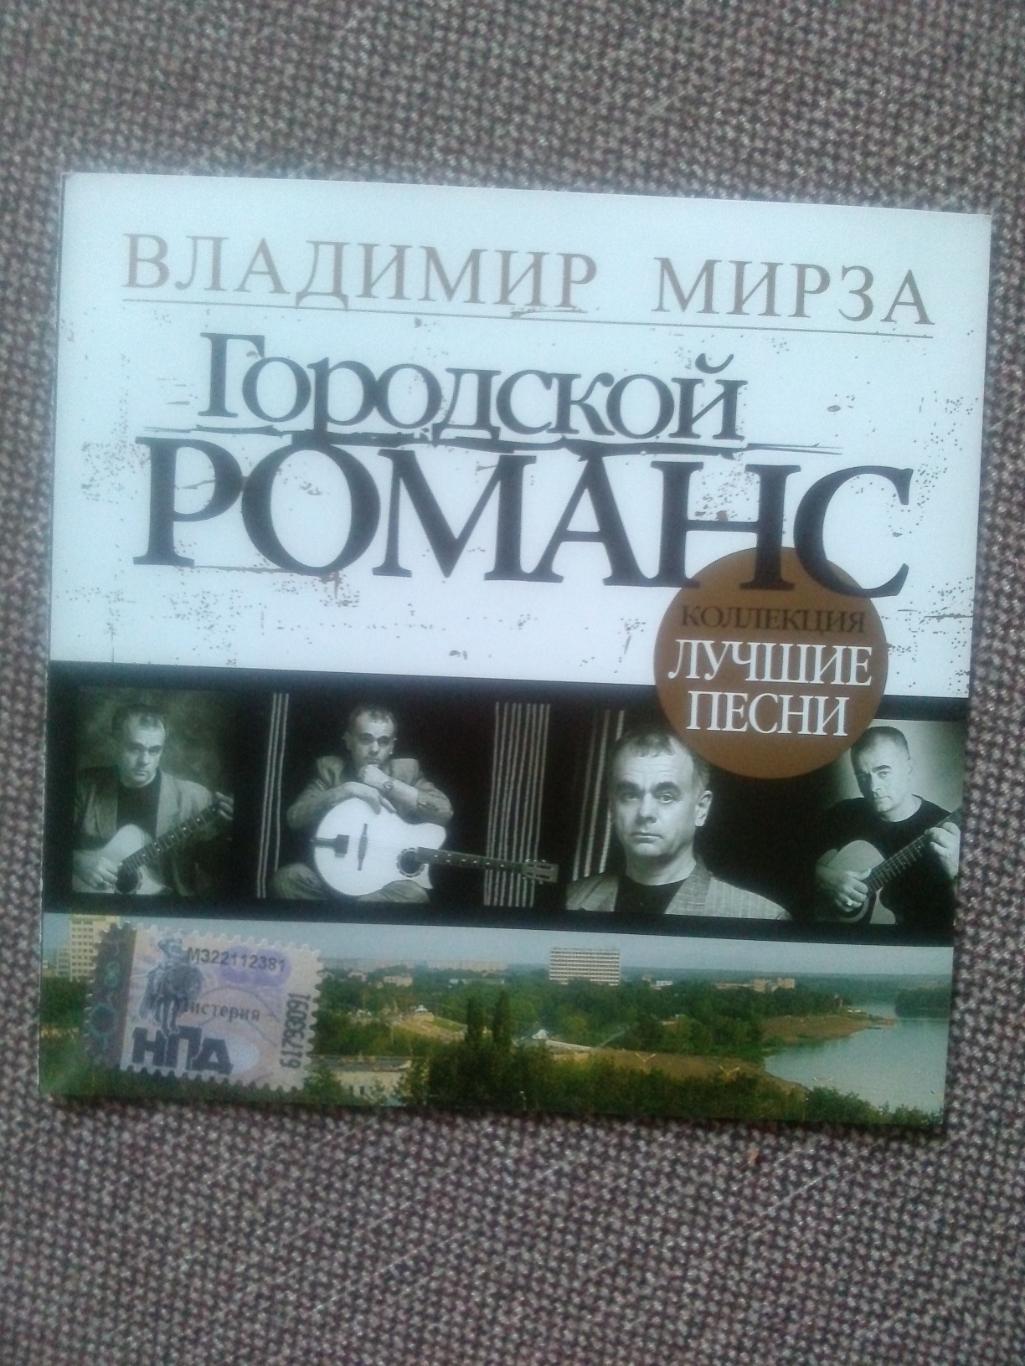 CD диск : Владимир Мирза -Городской романс2007 г. (Бард Шансон)